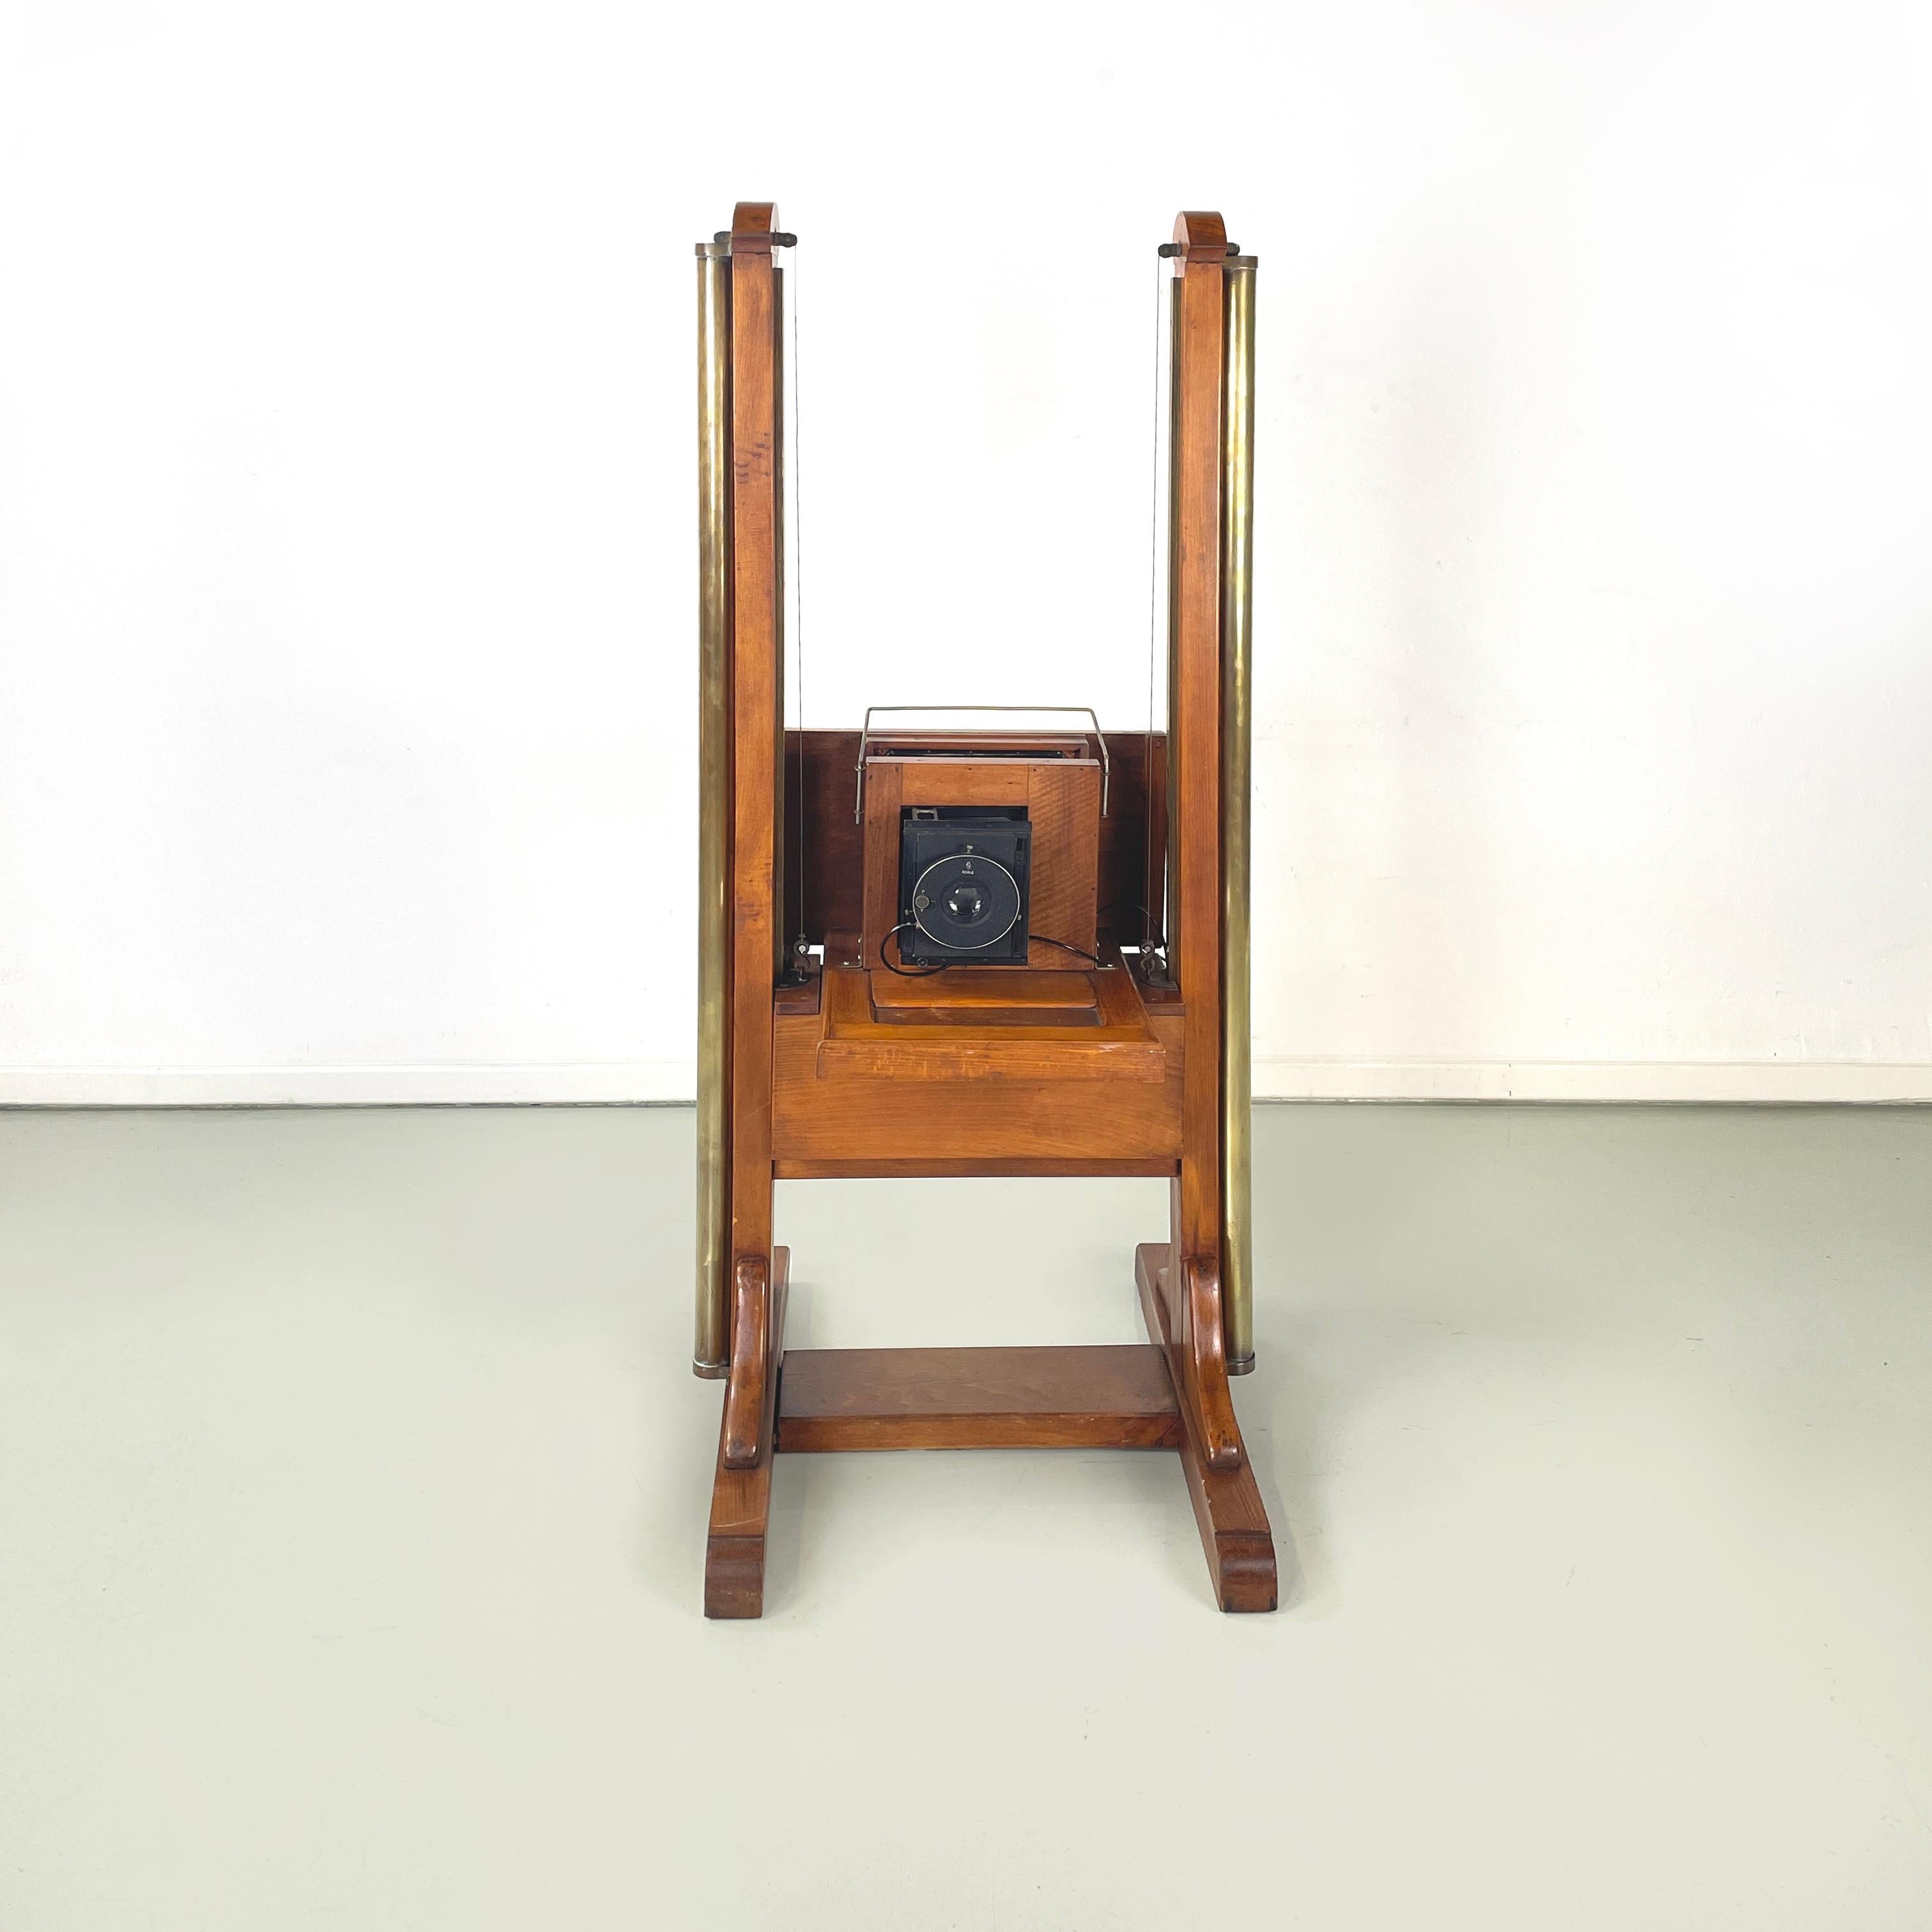 Caméra de sol analogique italienne en bois et laiton, années 1900
Caméra de sol analogique en bois et laiton. La structure est composée de deux montants en bois massif avec des cylindres en laiton, qui permettent à l'objectif de s'élever et de